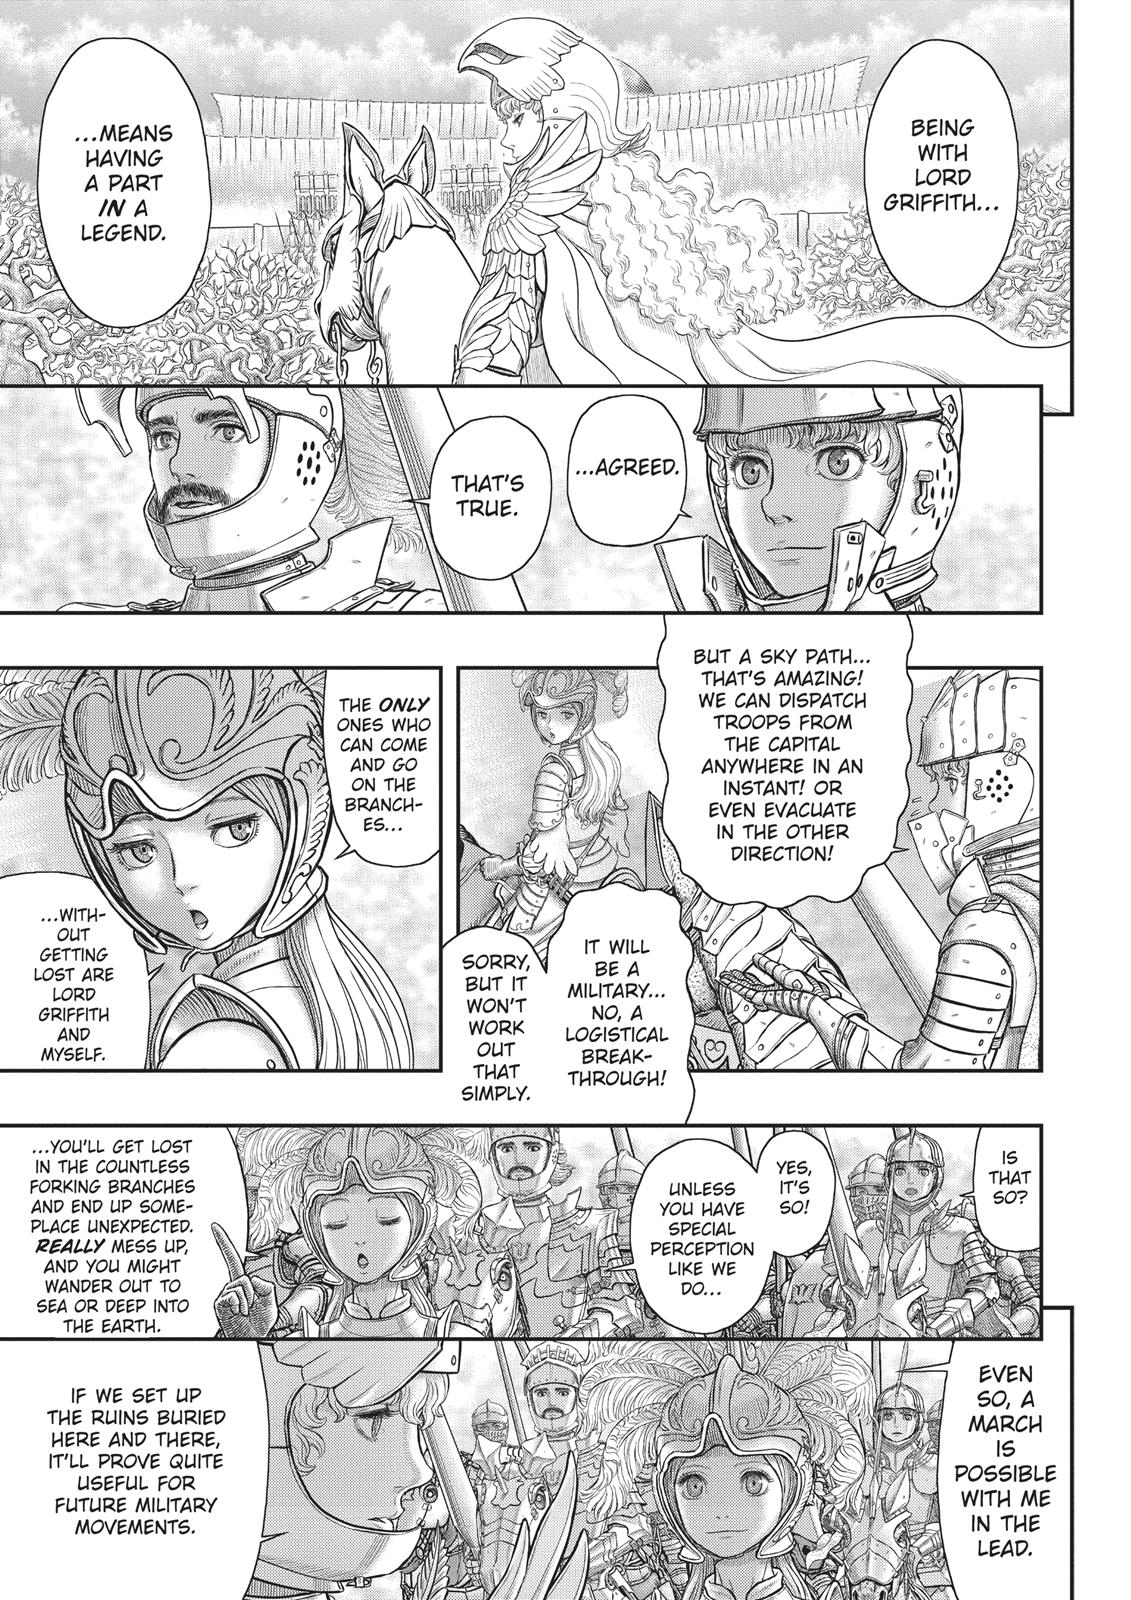 Berserk Manga Chapter 357 image 15